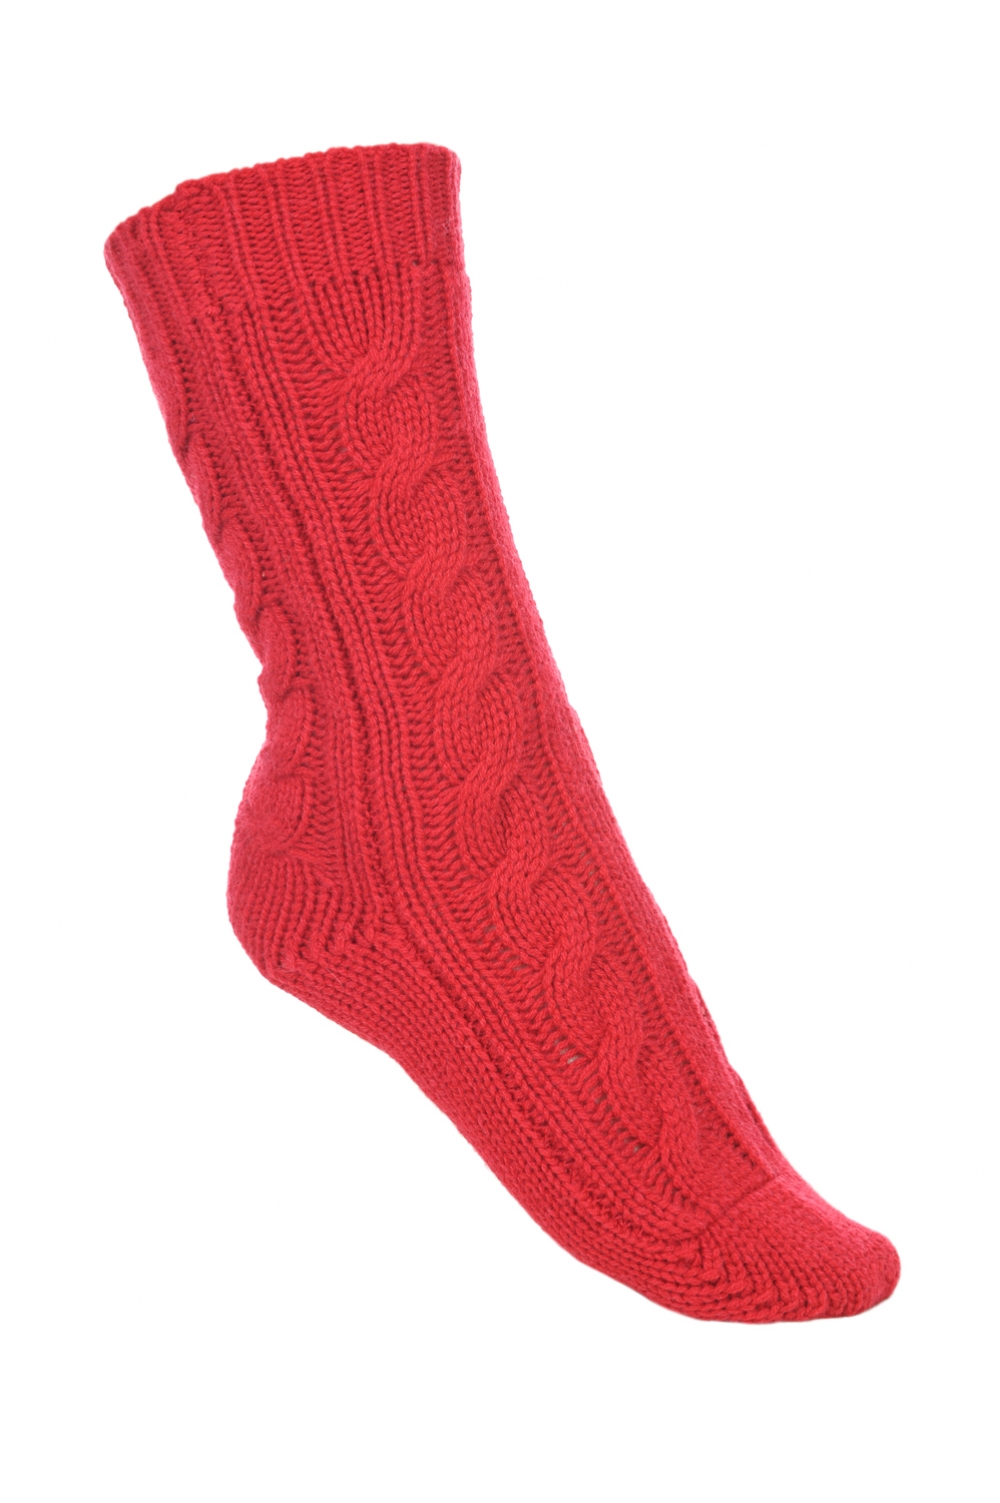 Cashmere accessori calze pedibus rosso rubino 37 41